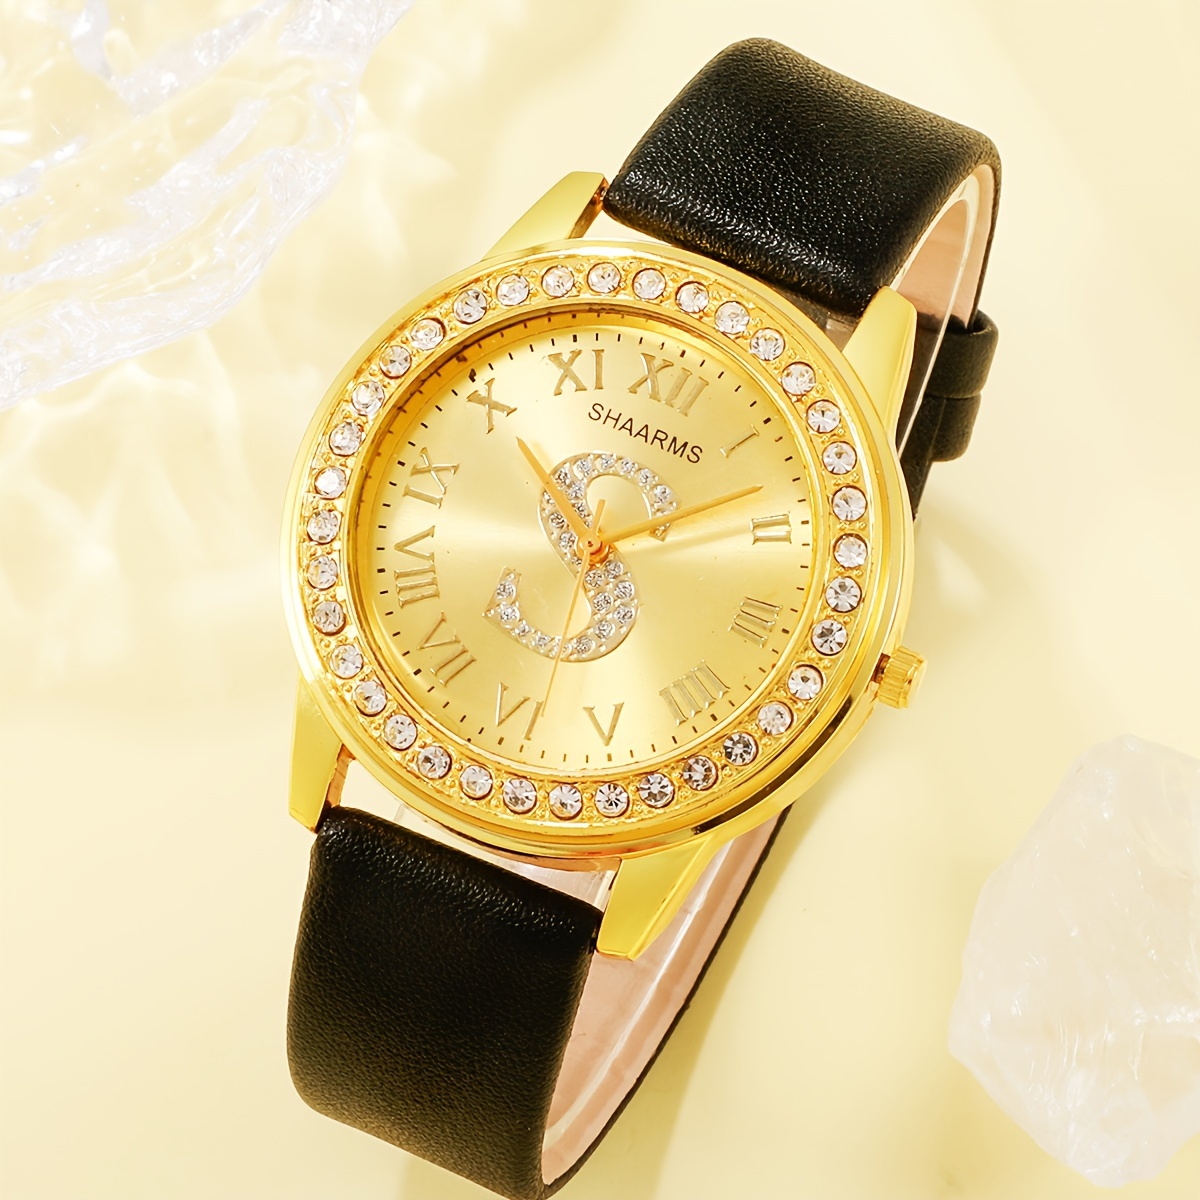 腕時計 レディース セット ラインストーン象嵌クォーツ腕時計1個、ティアドロップ型ジュエリーセットネックレスリングピアス3個付き。